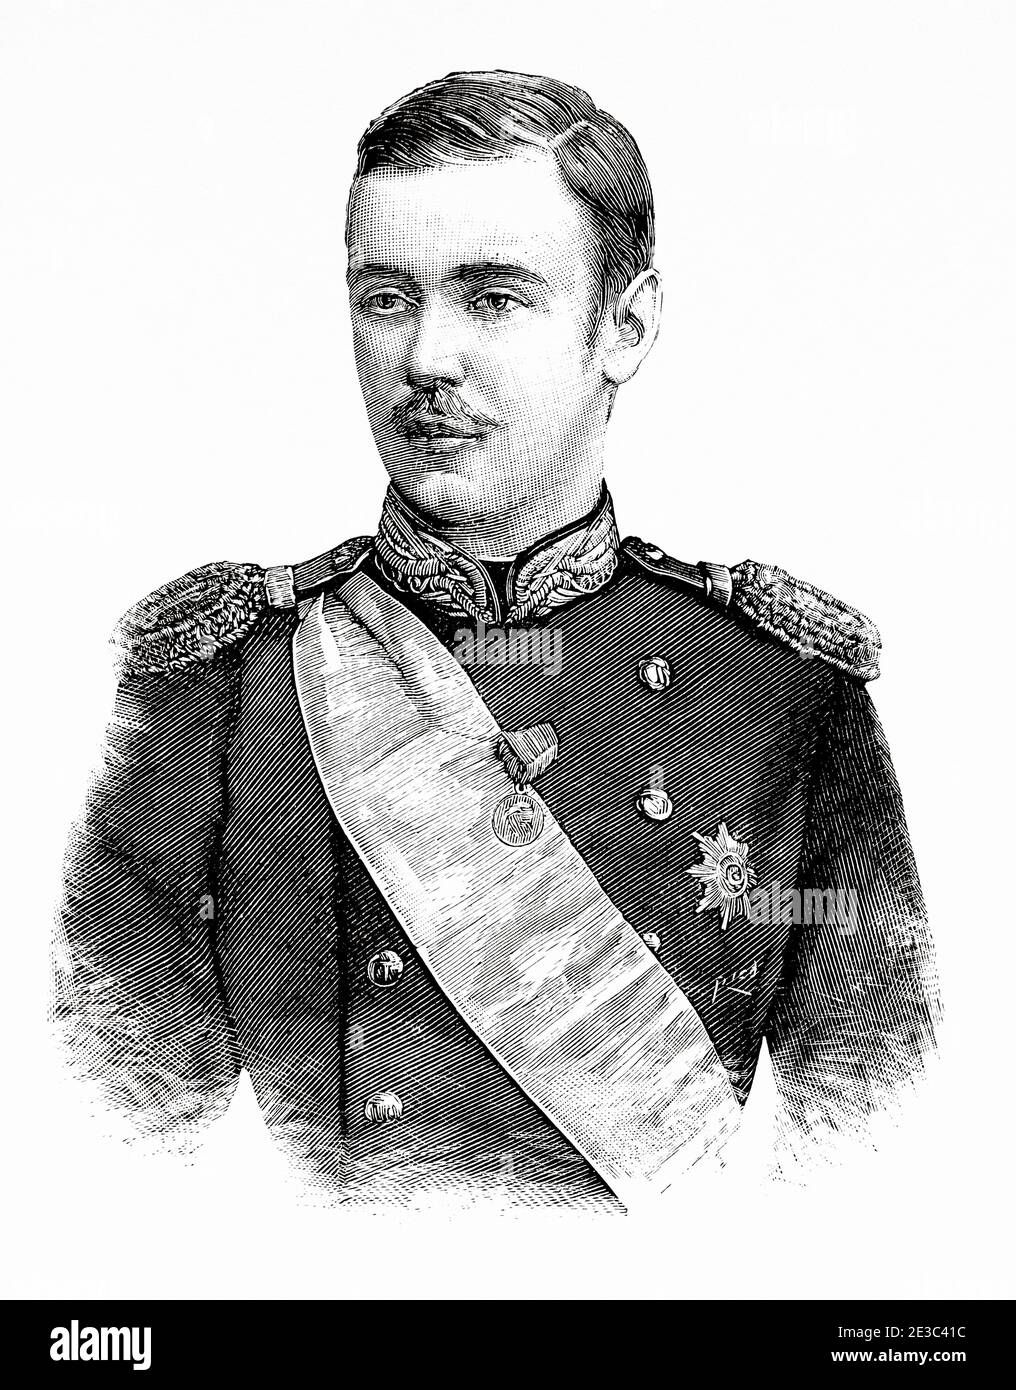 Portrait du prince russe George Alexandrovitch Yurovsky (1872 - 1913) Russie. Illustration gravée de la Ilustracion Española y Americana datant du XIXe siècle 1894 Banque D'Images